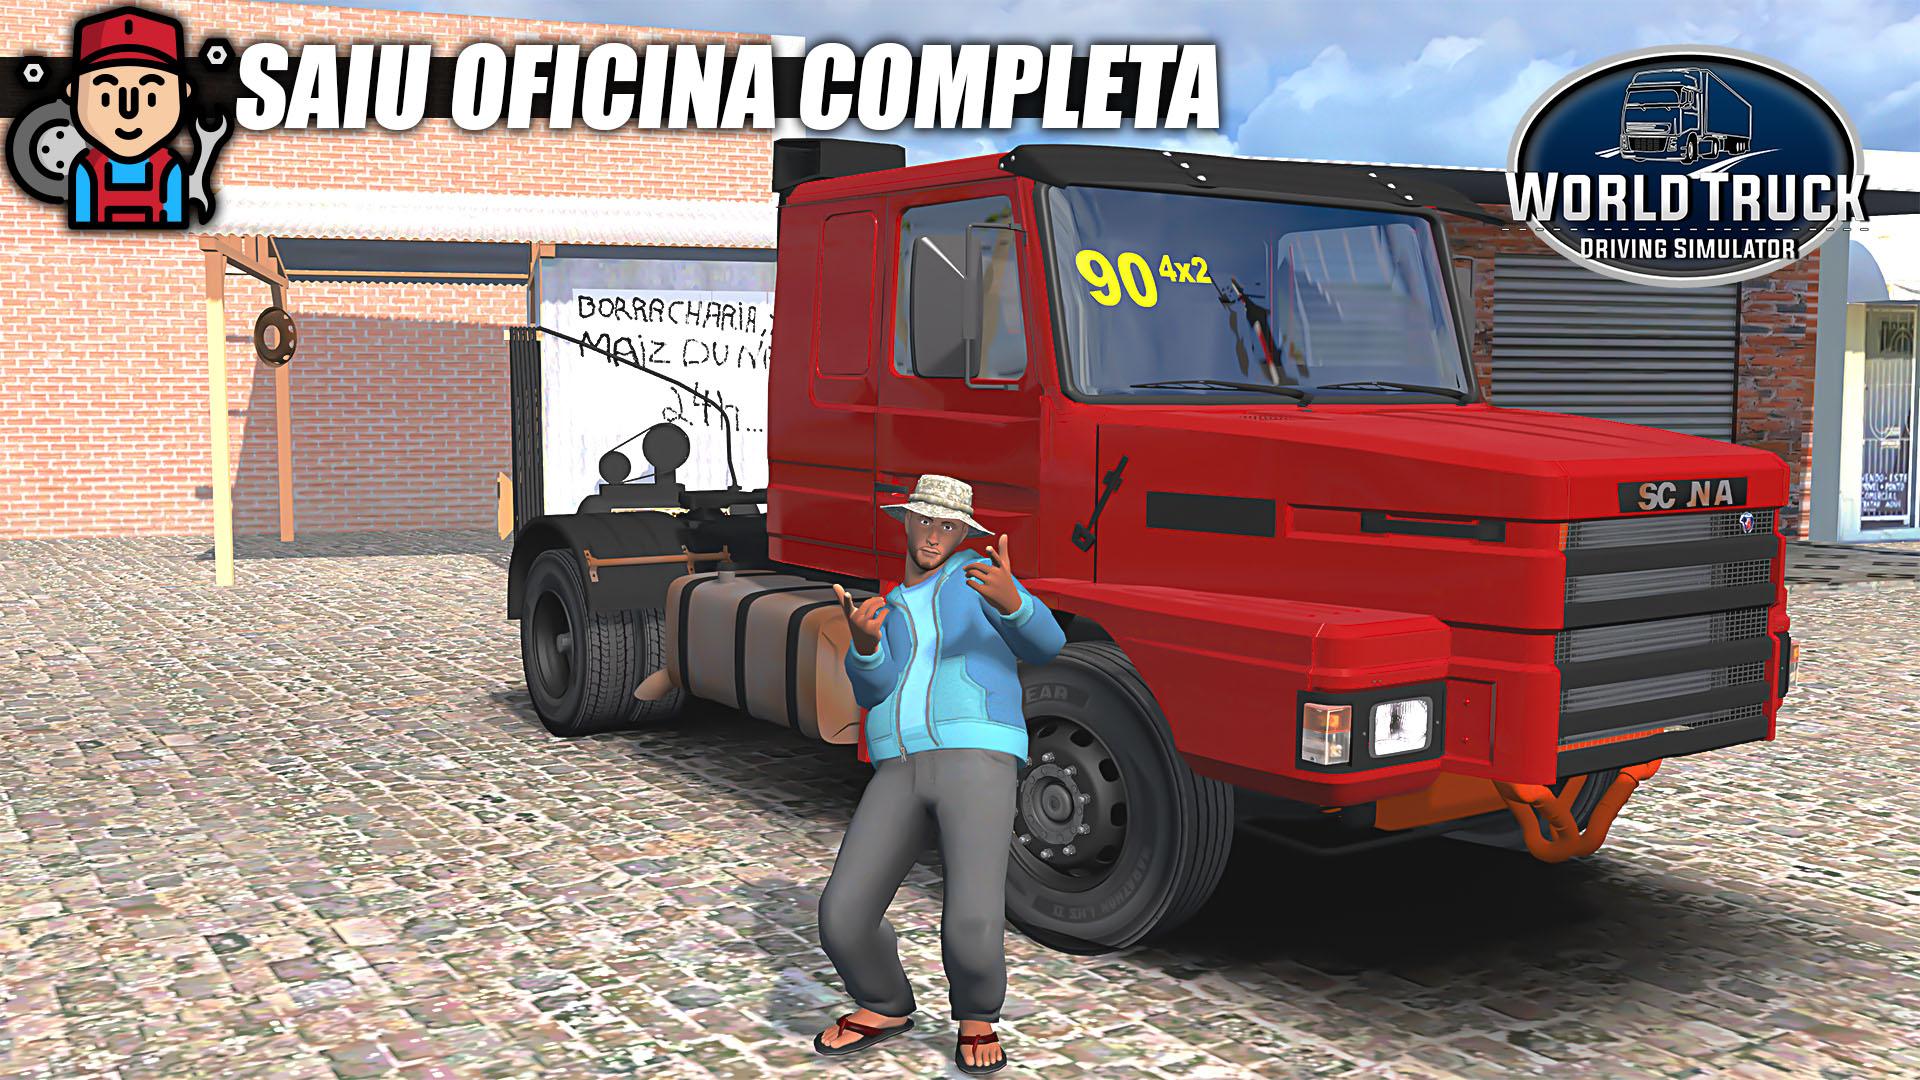 Novo Jogo de Caminhão Brasileiro para PC+Download 